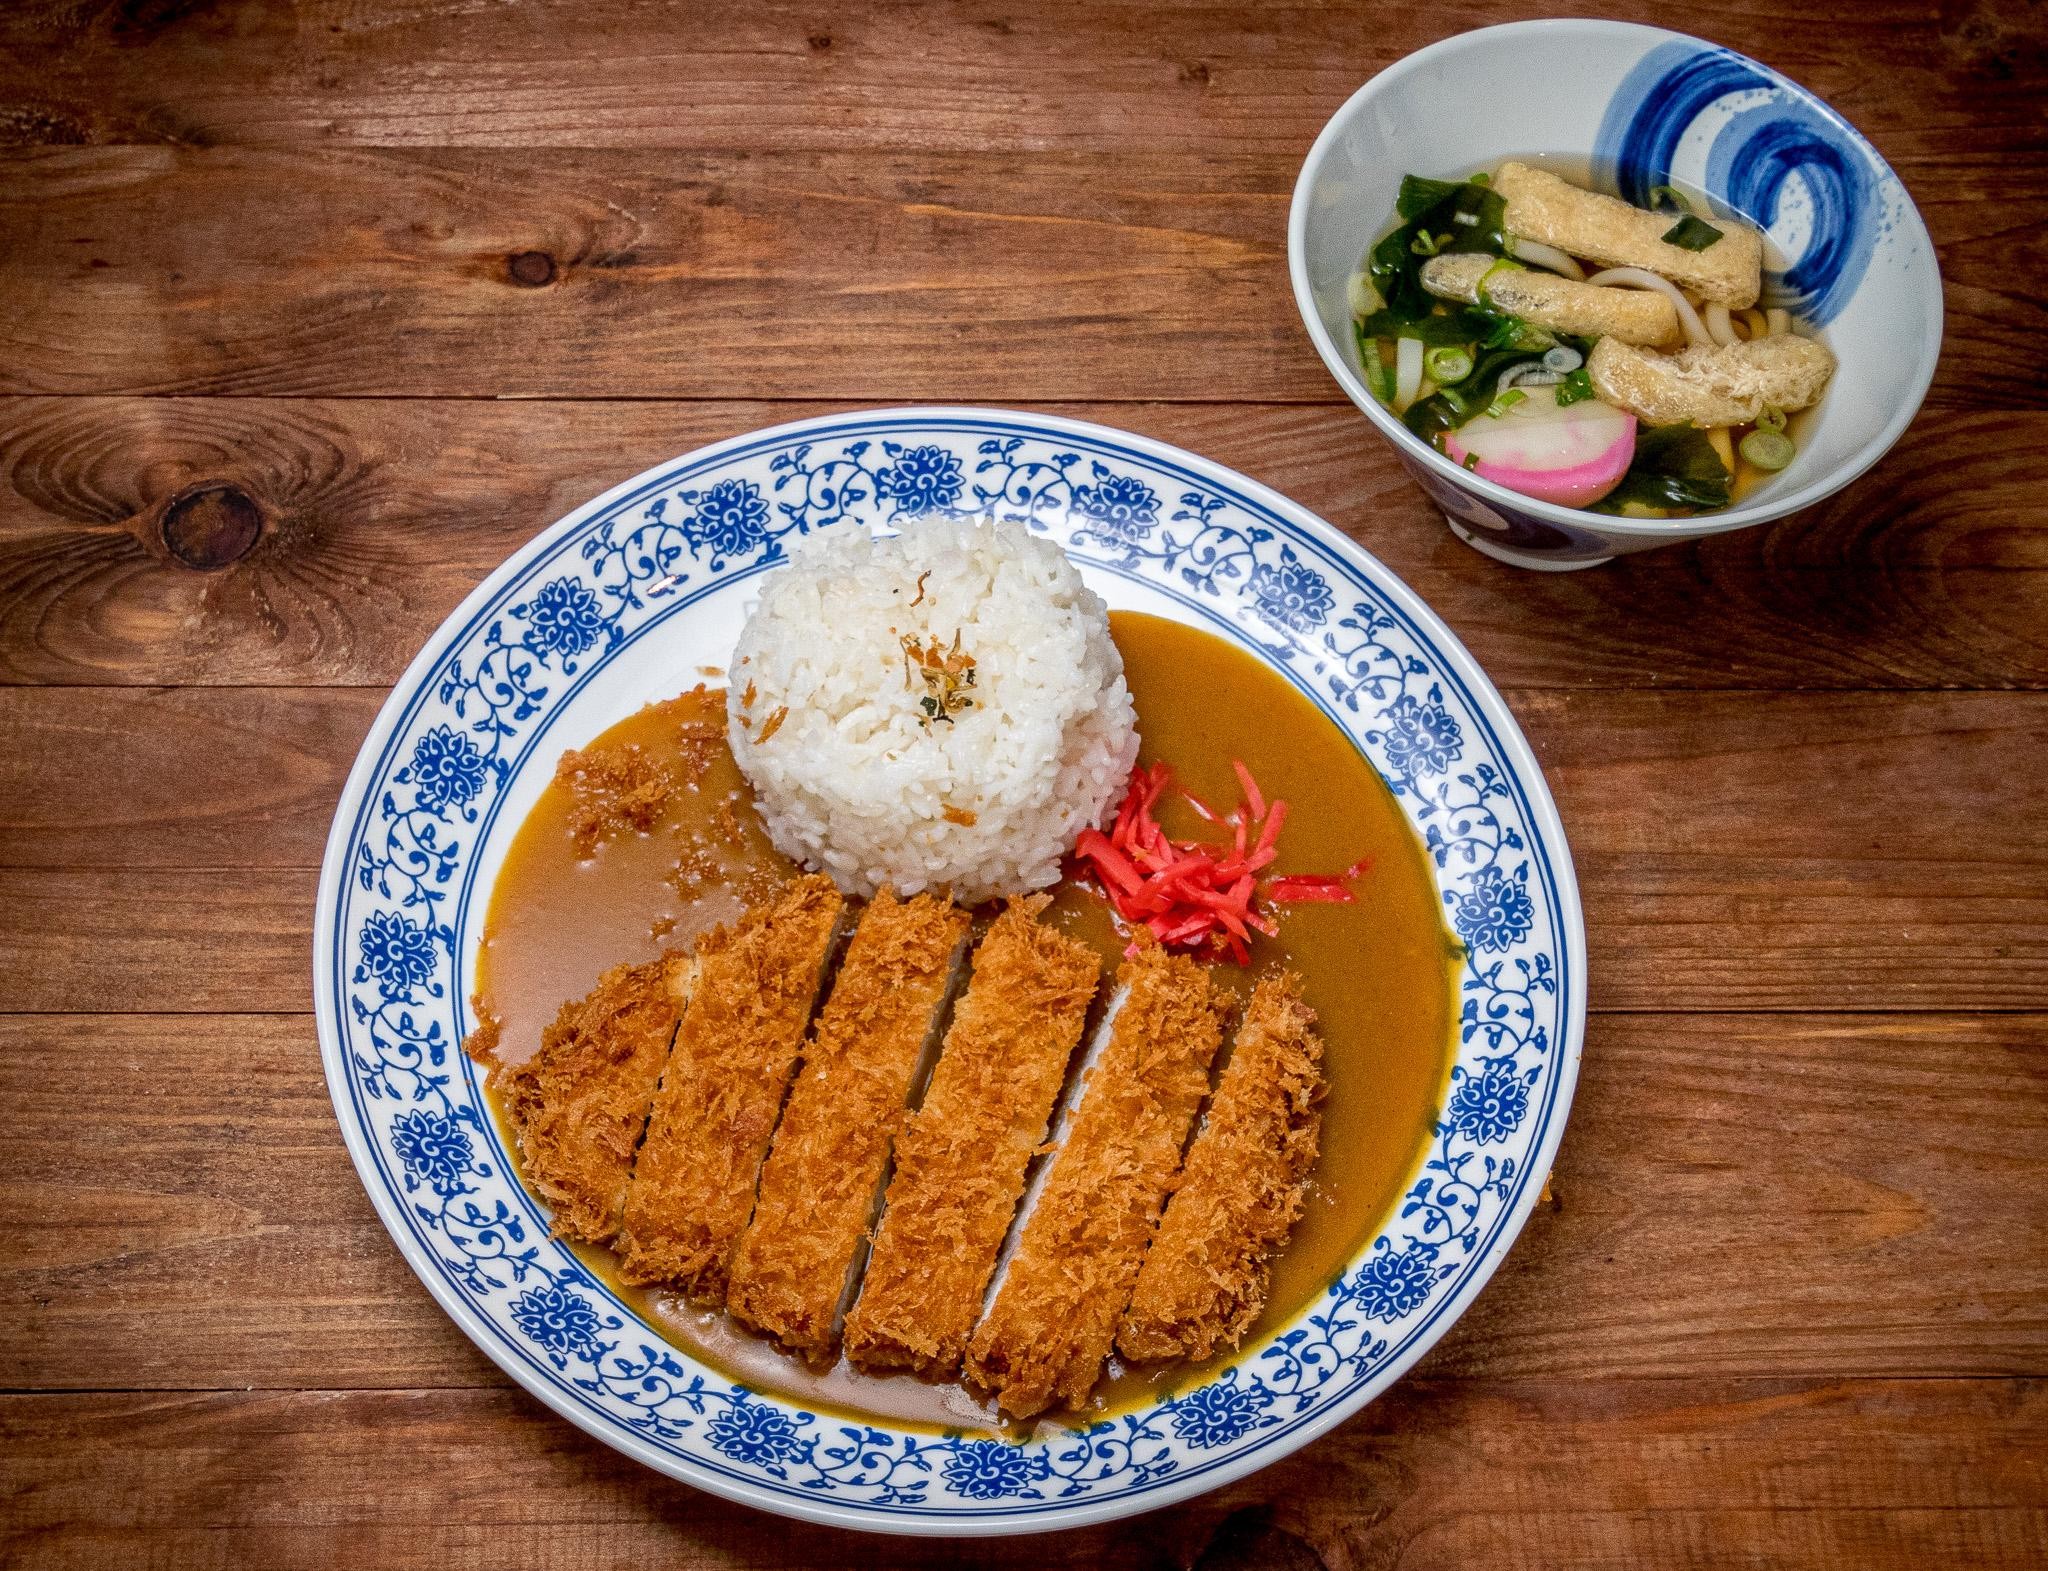 13. Tonkatsu Curry